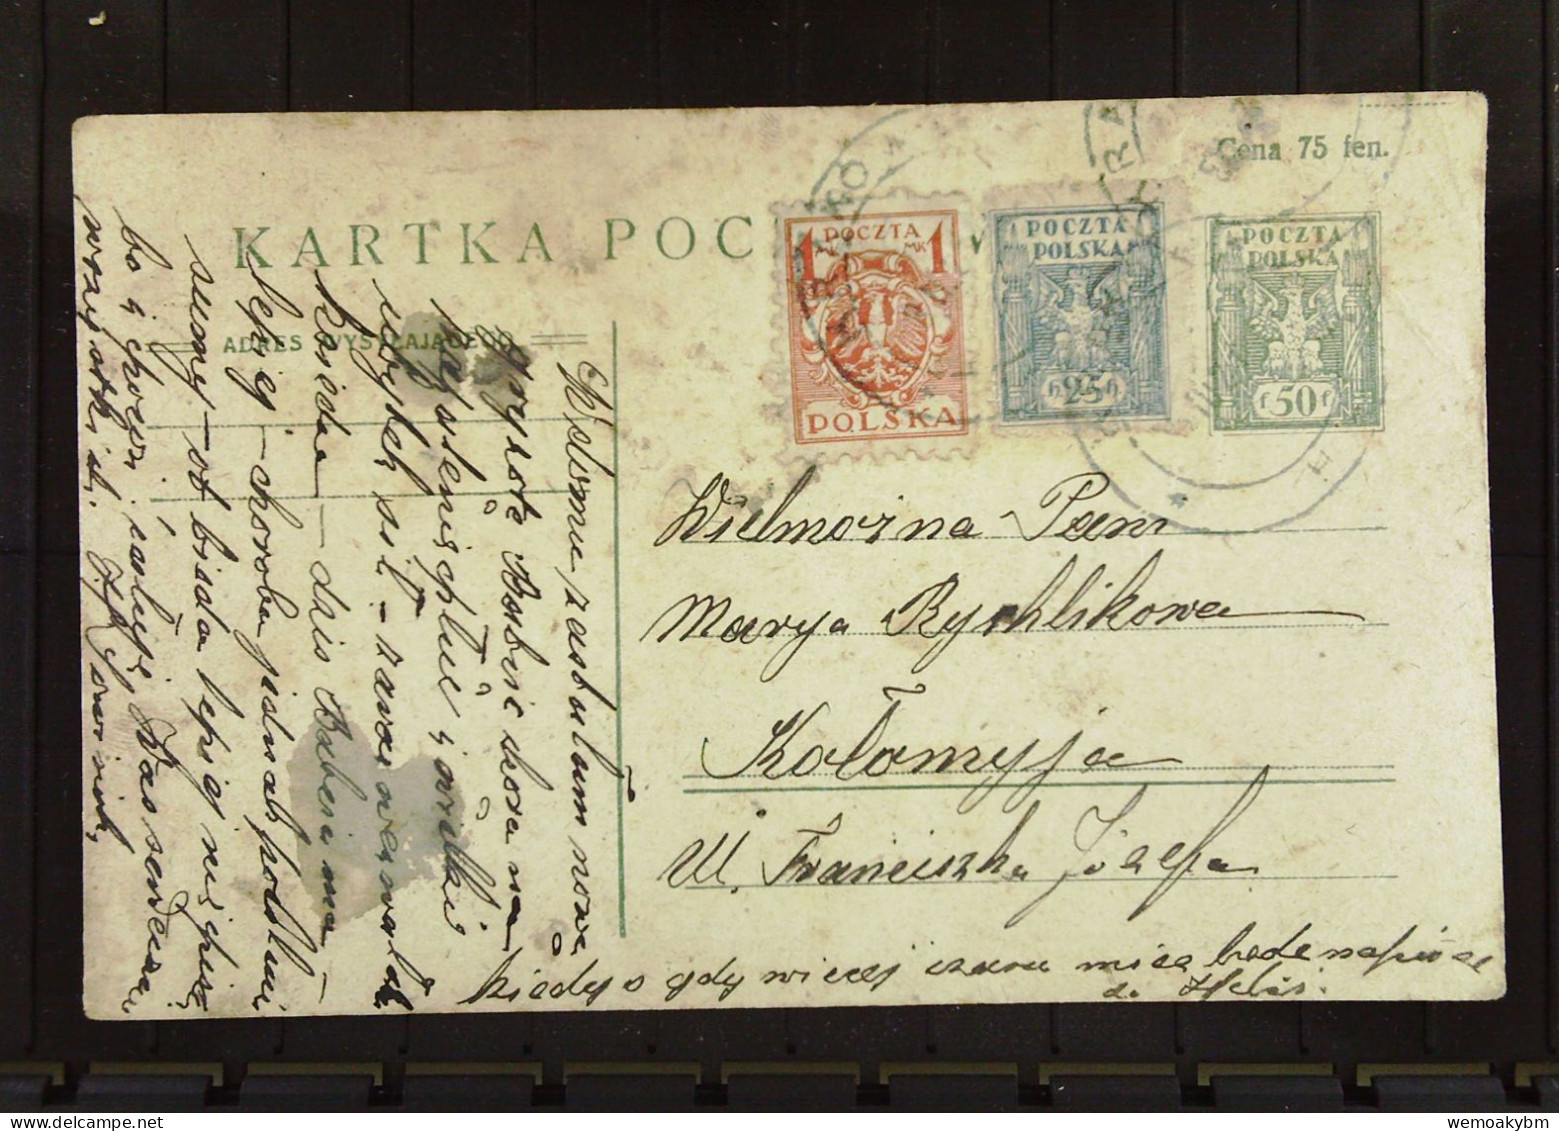 Polen: Ganzsachen-Postkarte Mit POLSKA 50 F Und Zusatz-Marken 25 H Und 1 Mk Um 1920 - Lettres & Documents